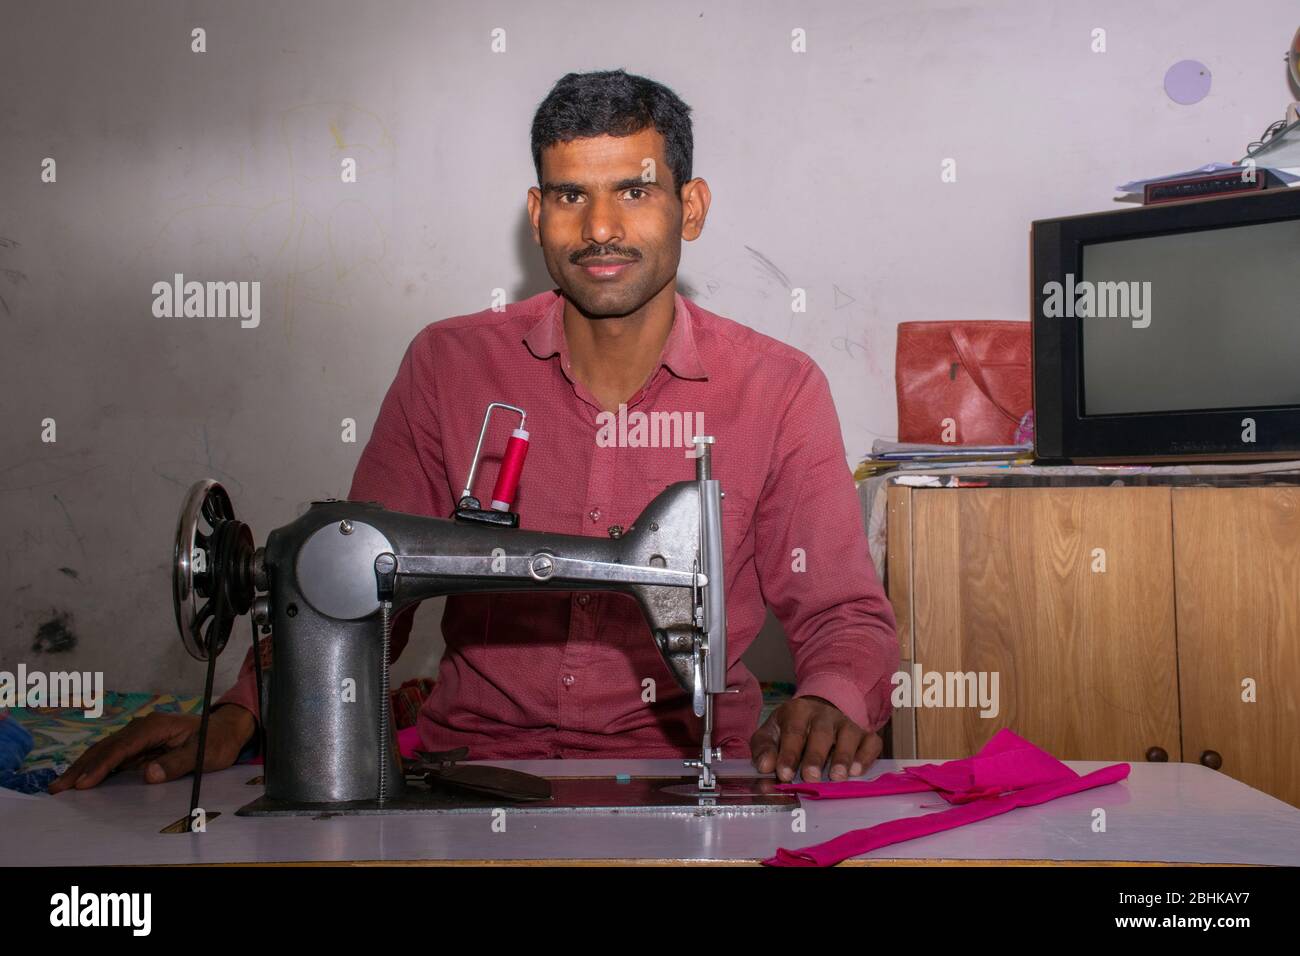 homme travaillant sur machine à coudre sur mesure Banque D'Images